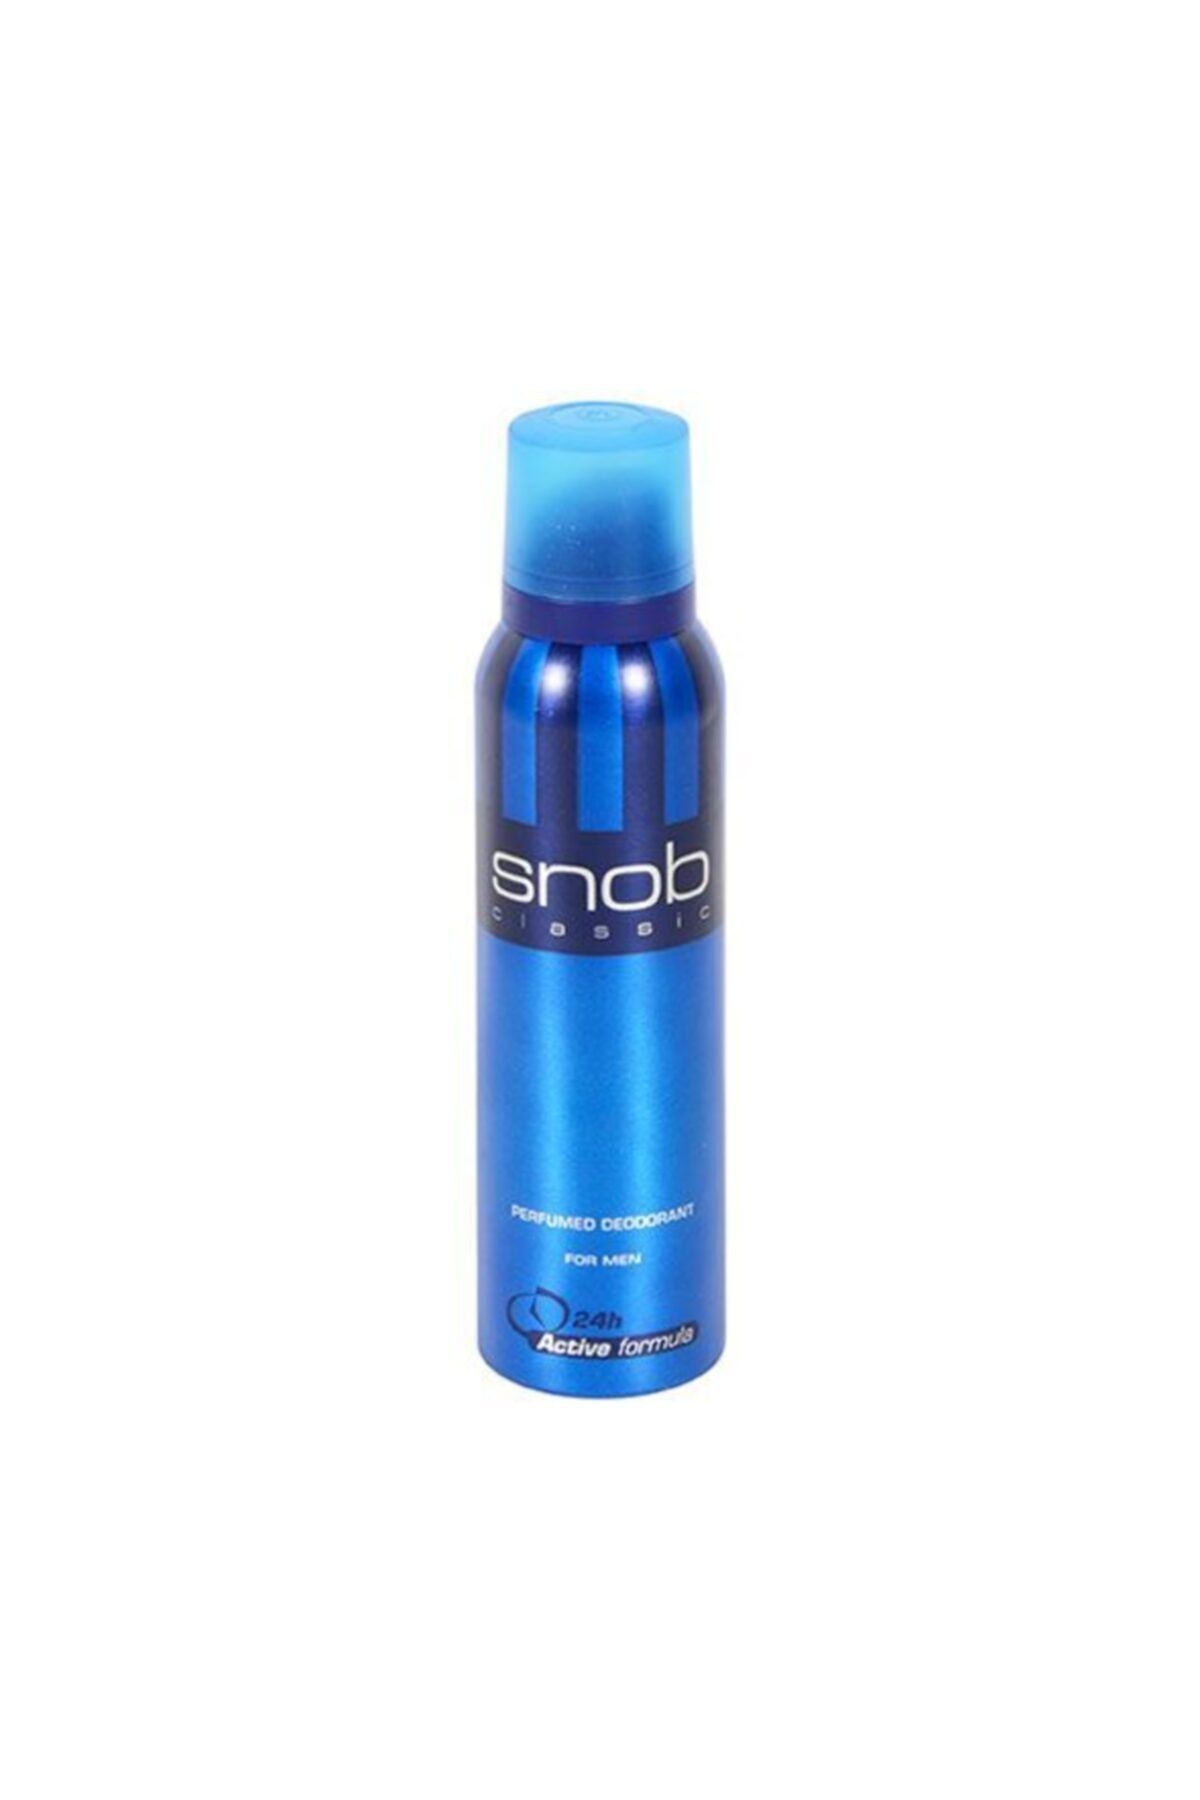 Snob For Men Classic Deodorant 150ml